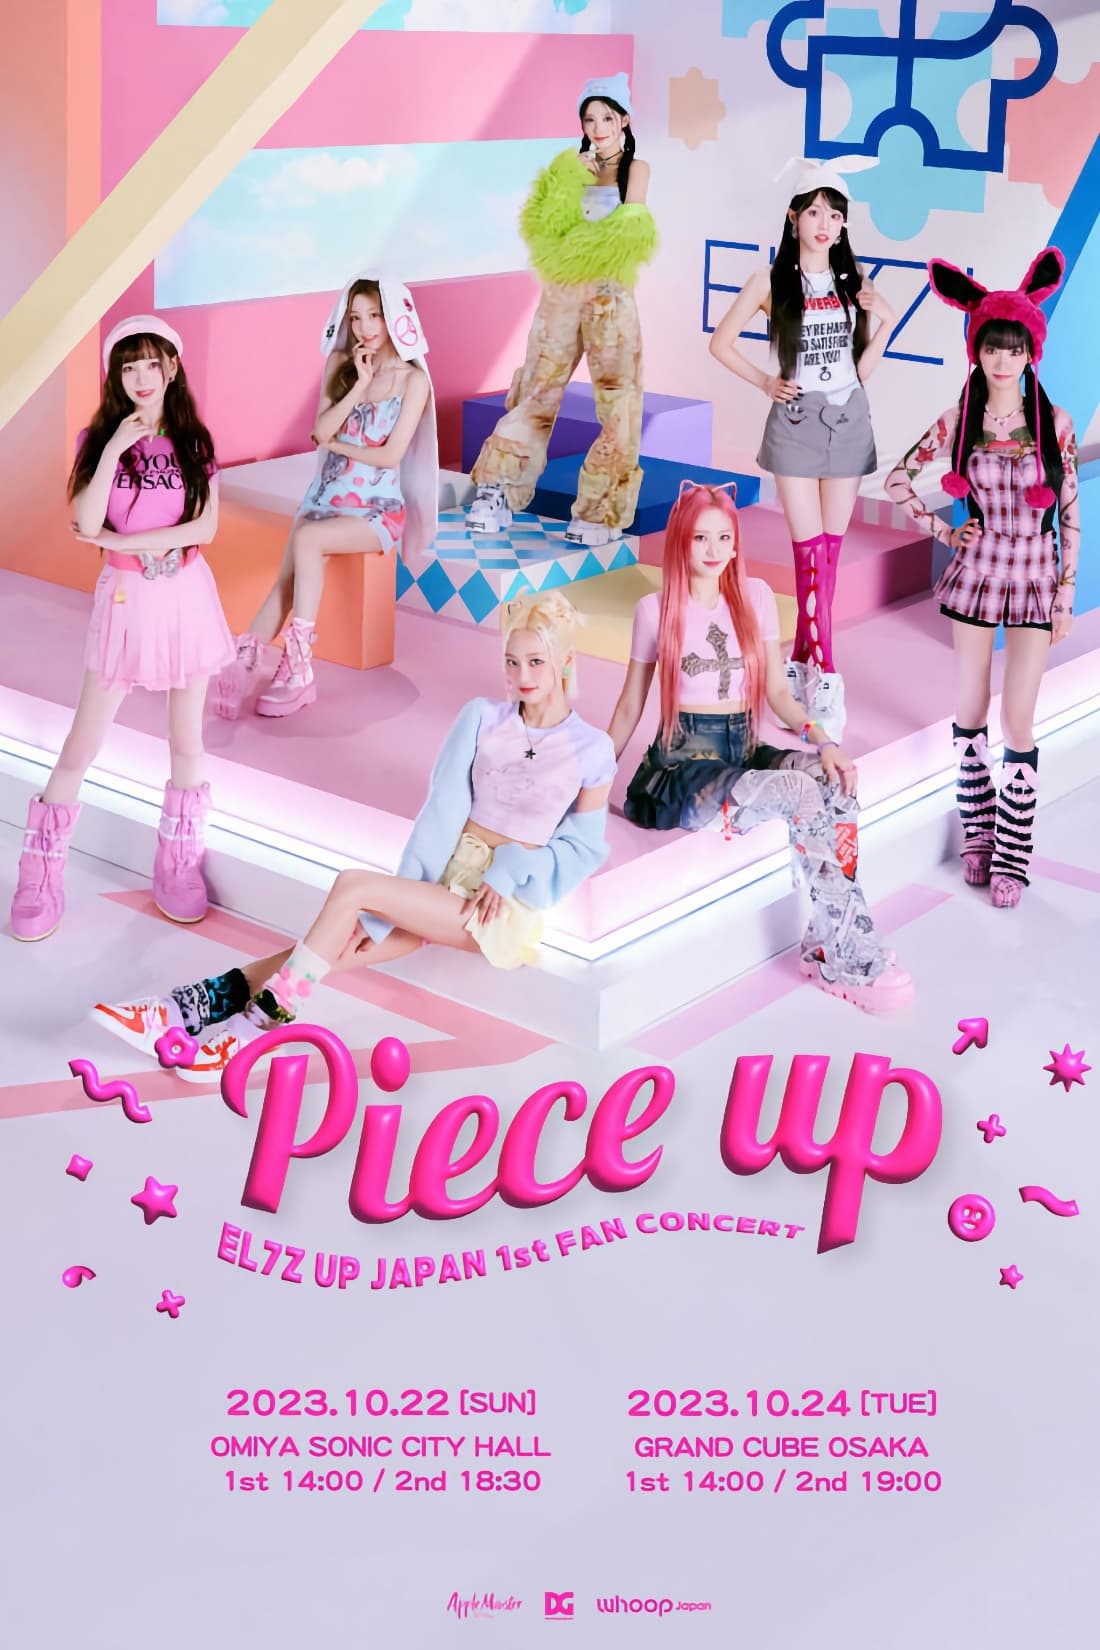 EL7Z UP - Japan 1st Fan Concert 'Piece Up'